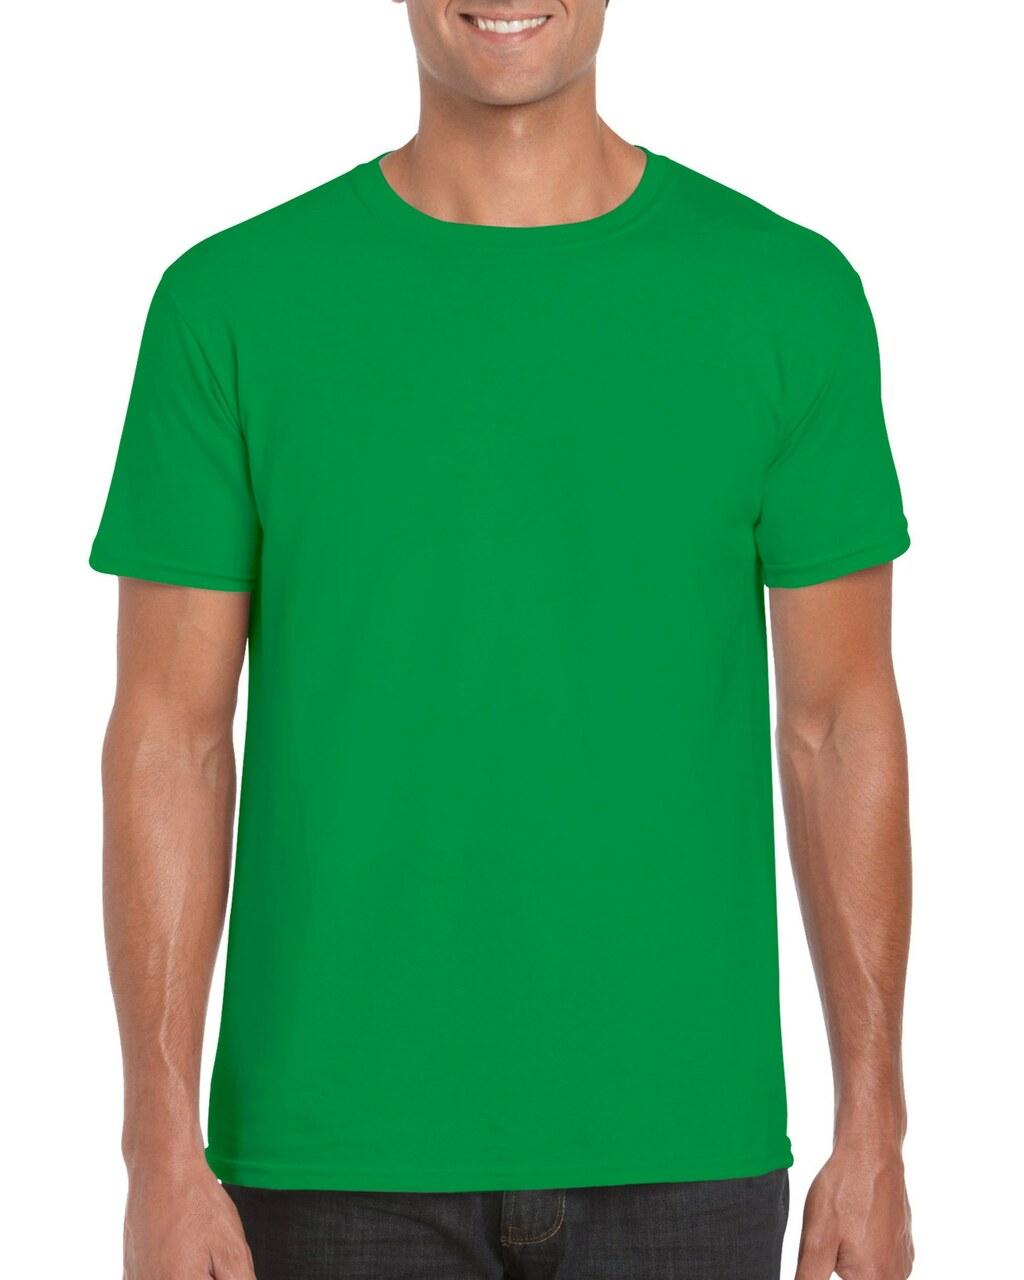 Чоловіча футболка однотона зелена